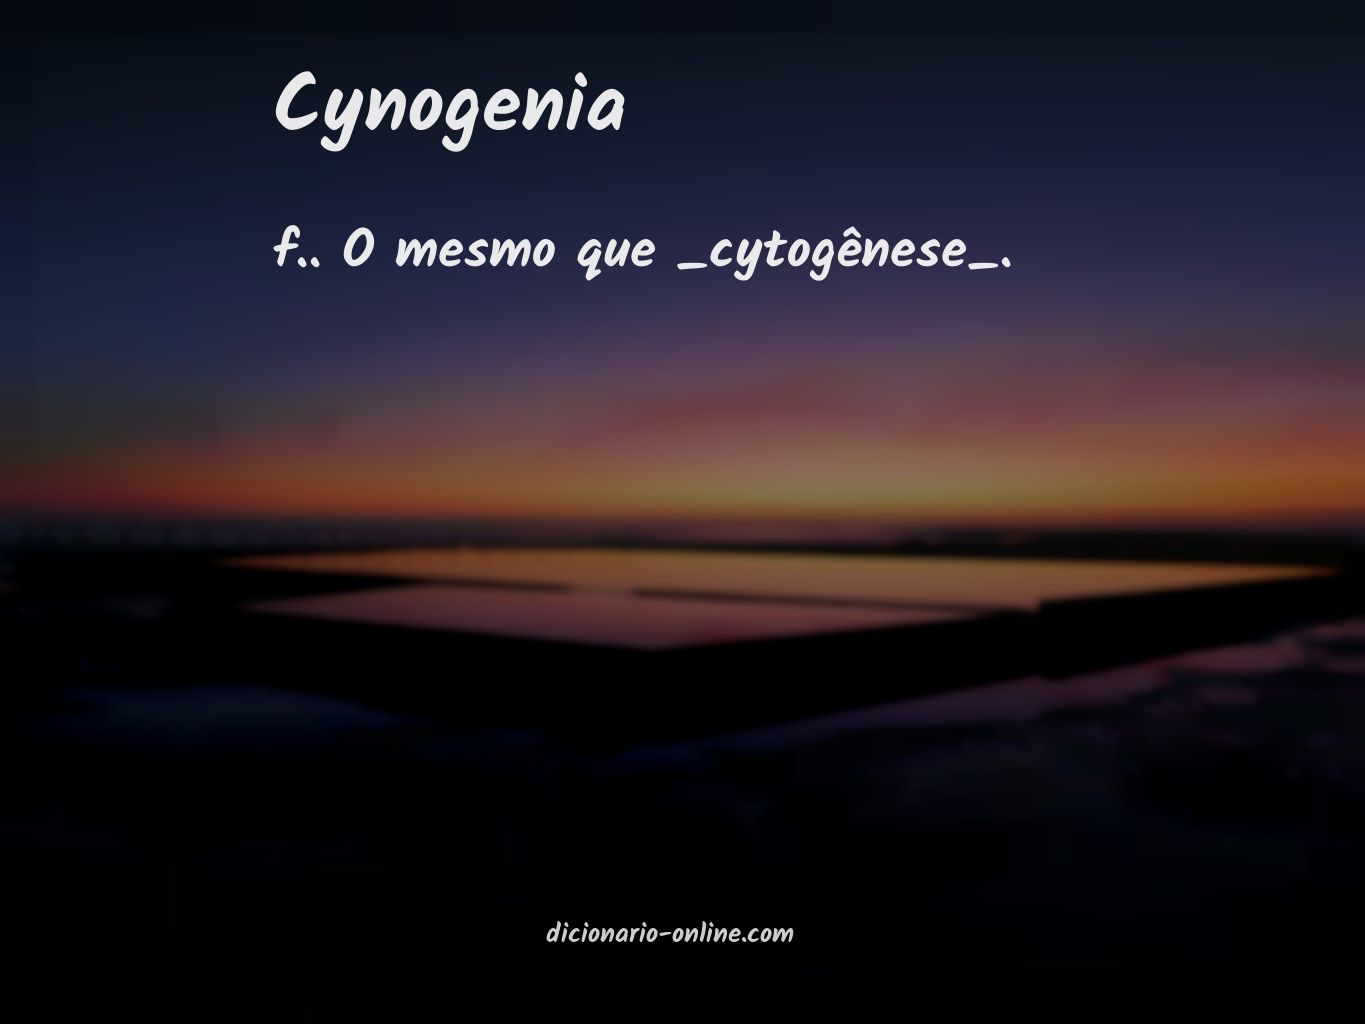 Significado de cynogenia